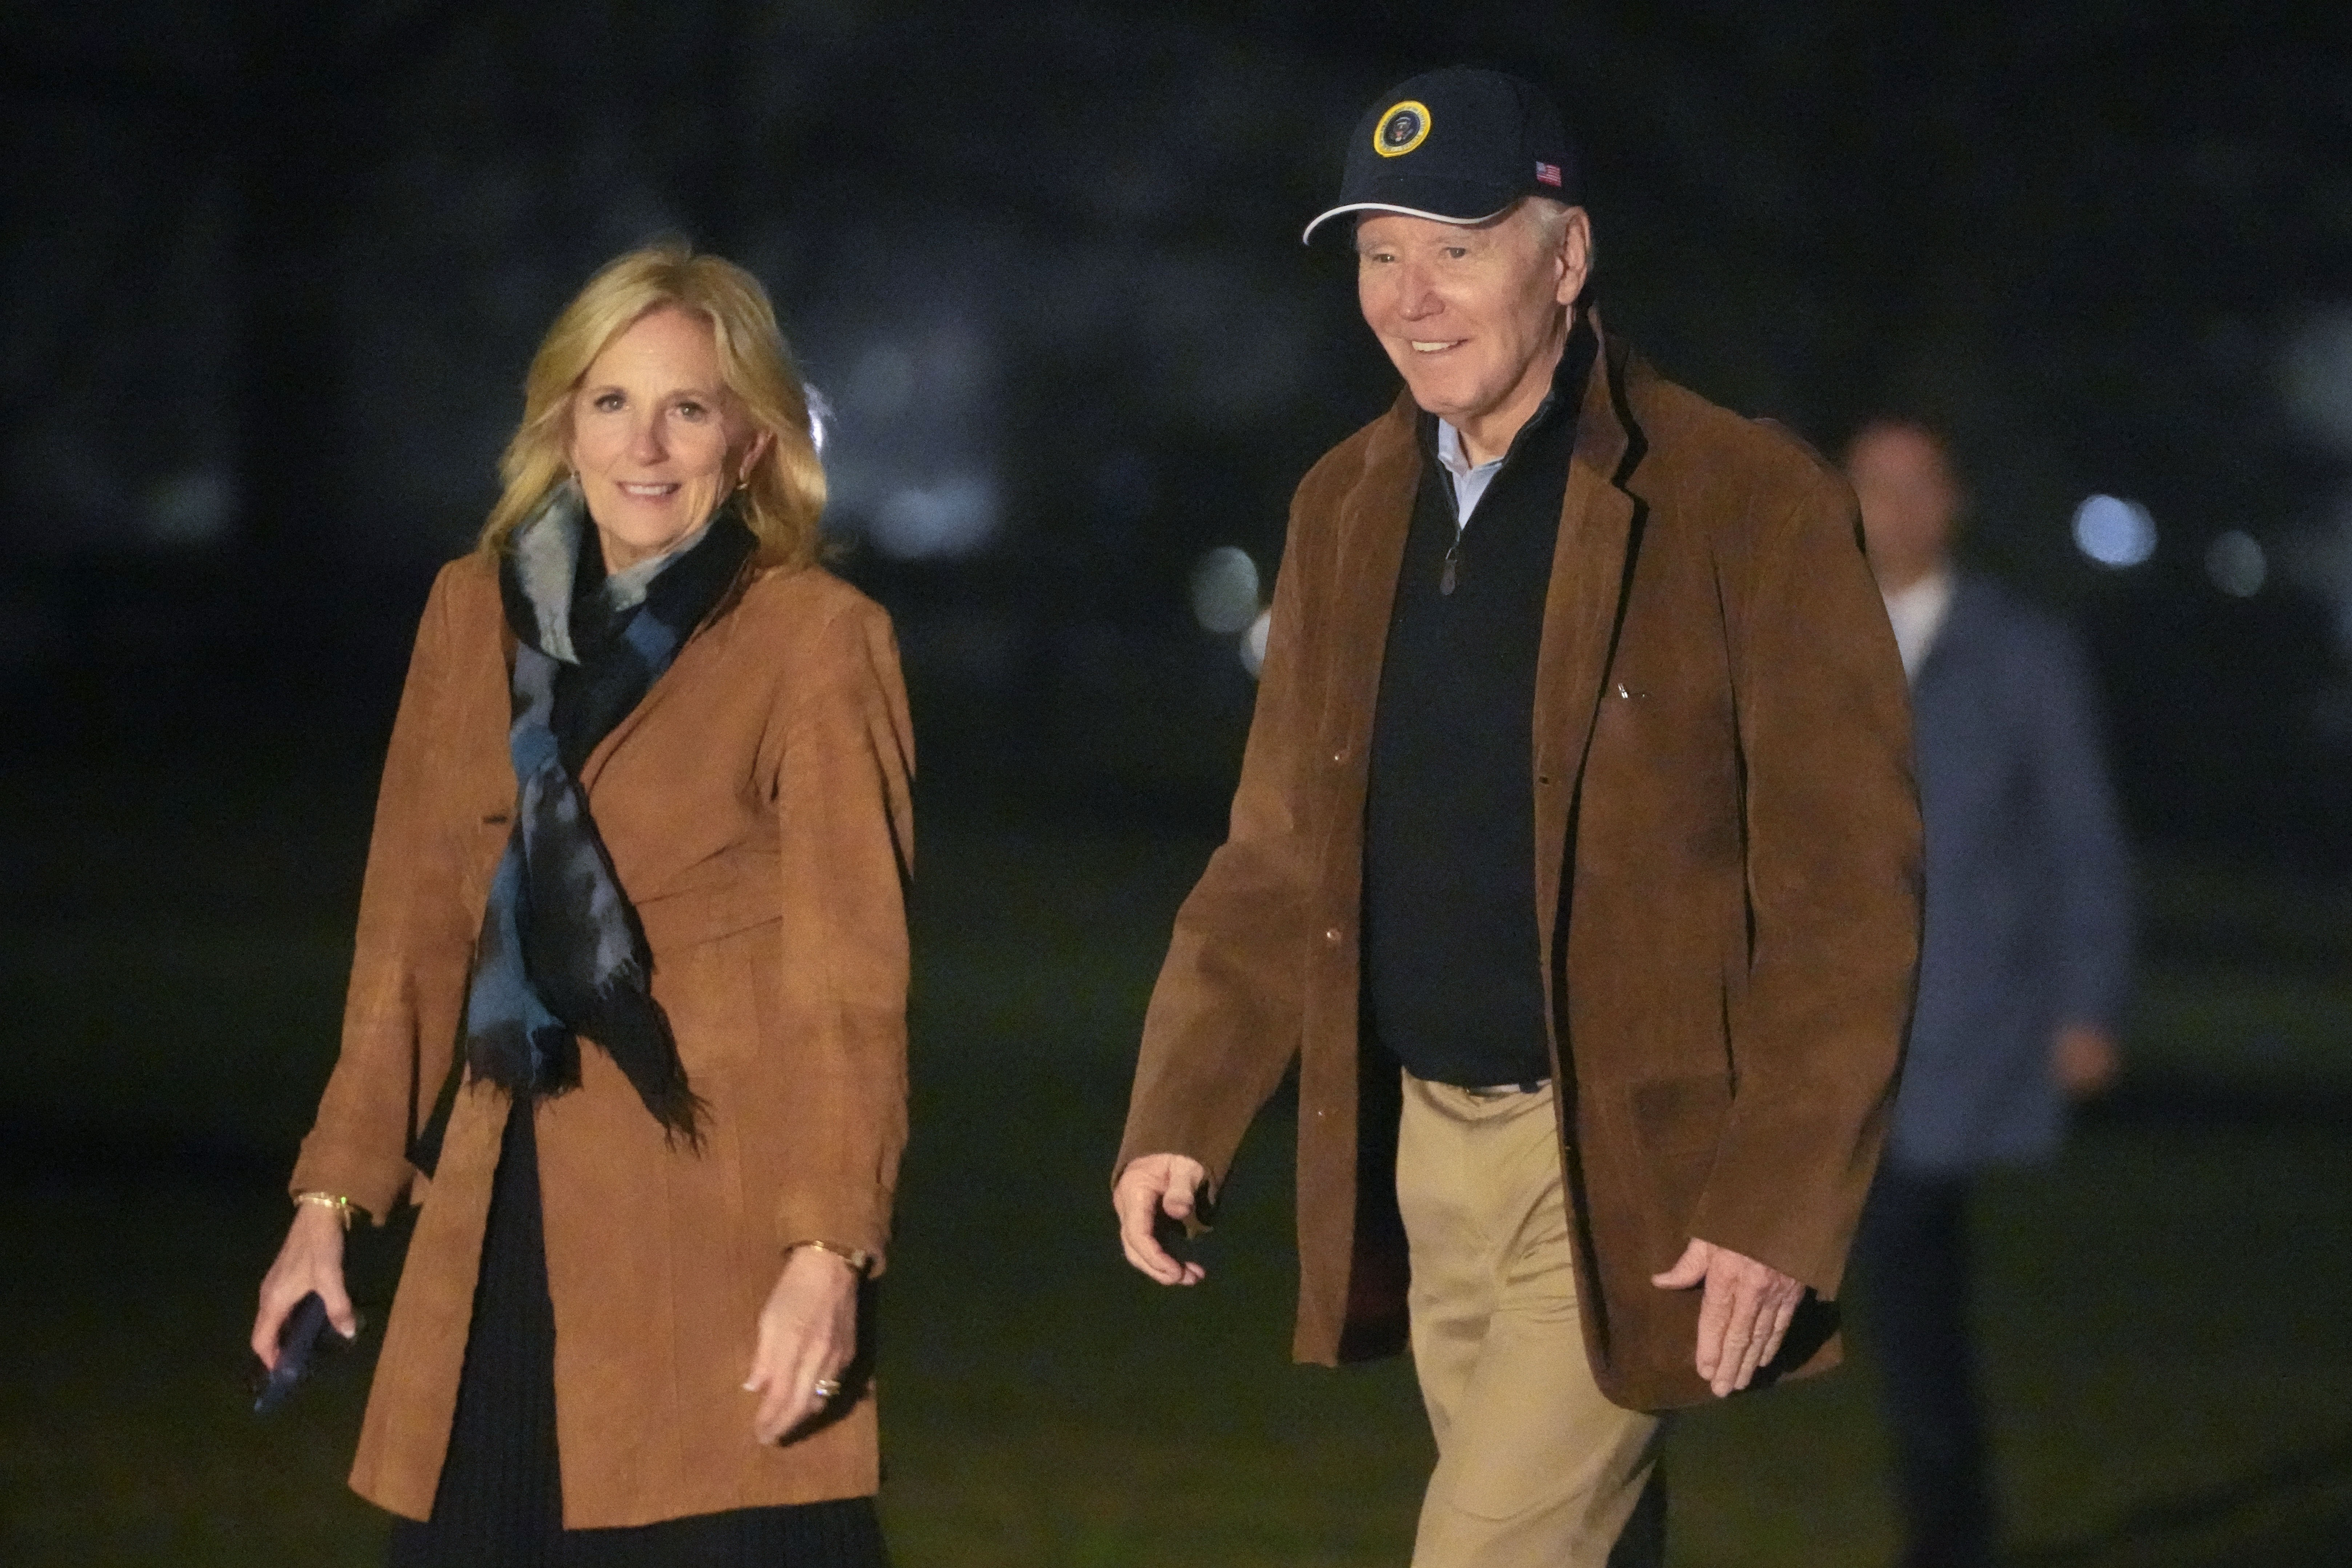 Präsident Biden und Jill Biden wurden am Sonntagabend beim Spaziergang über den Rasen des Weißen Hauses abgebildet